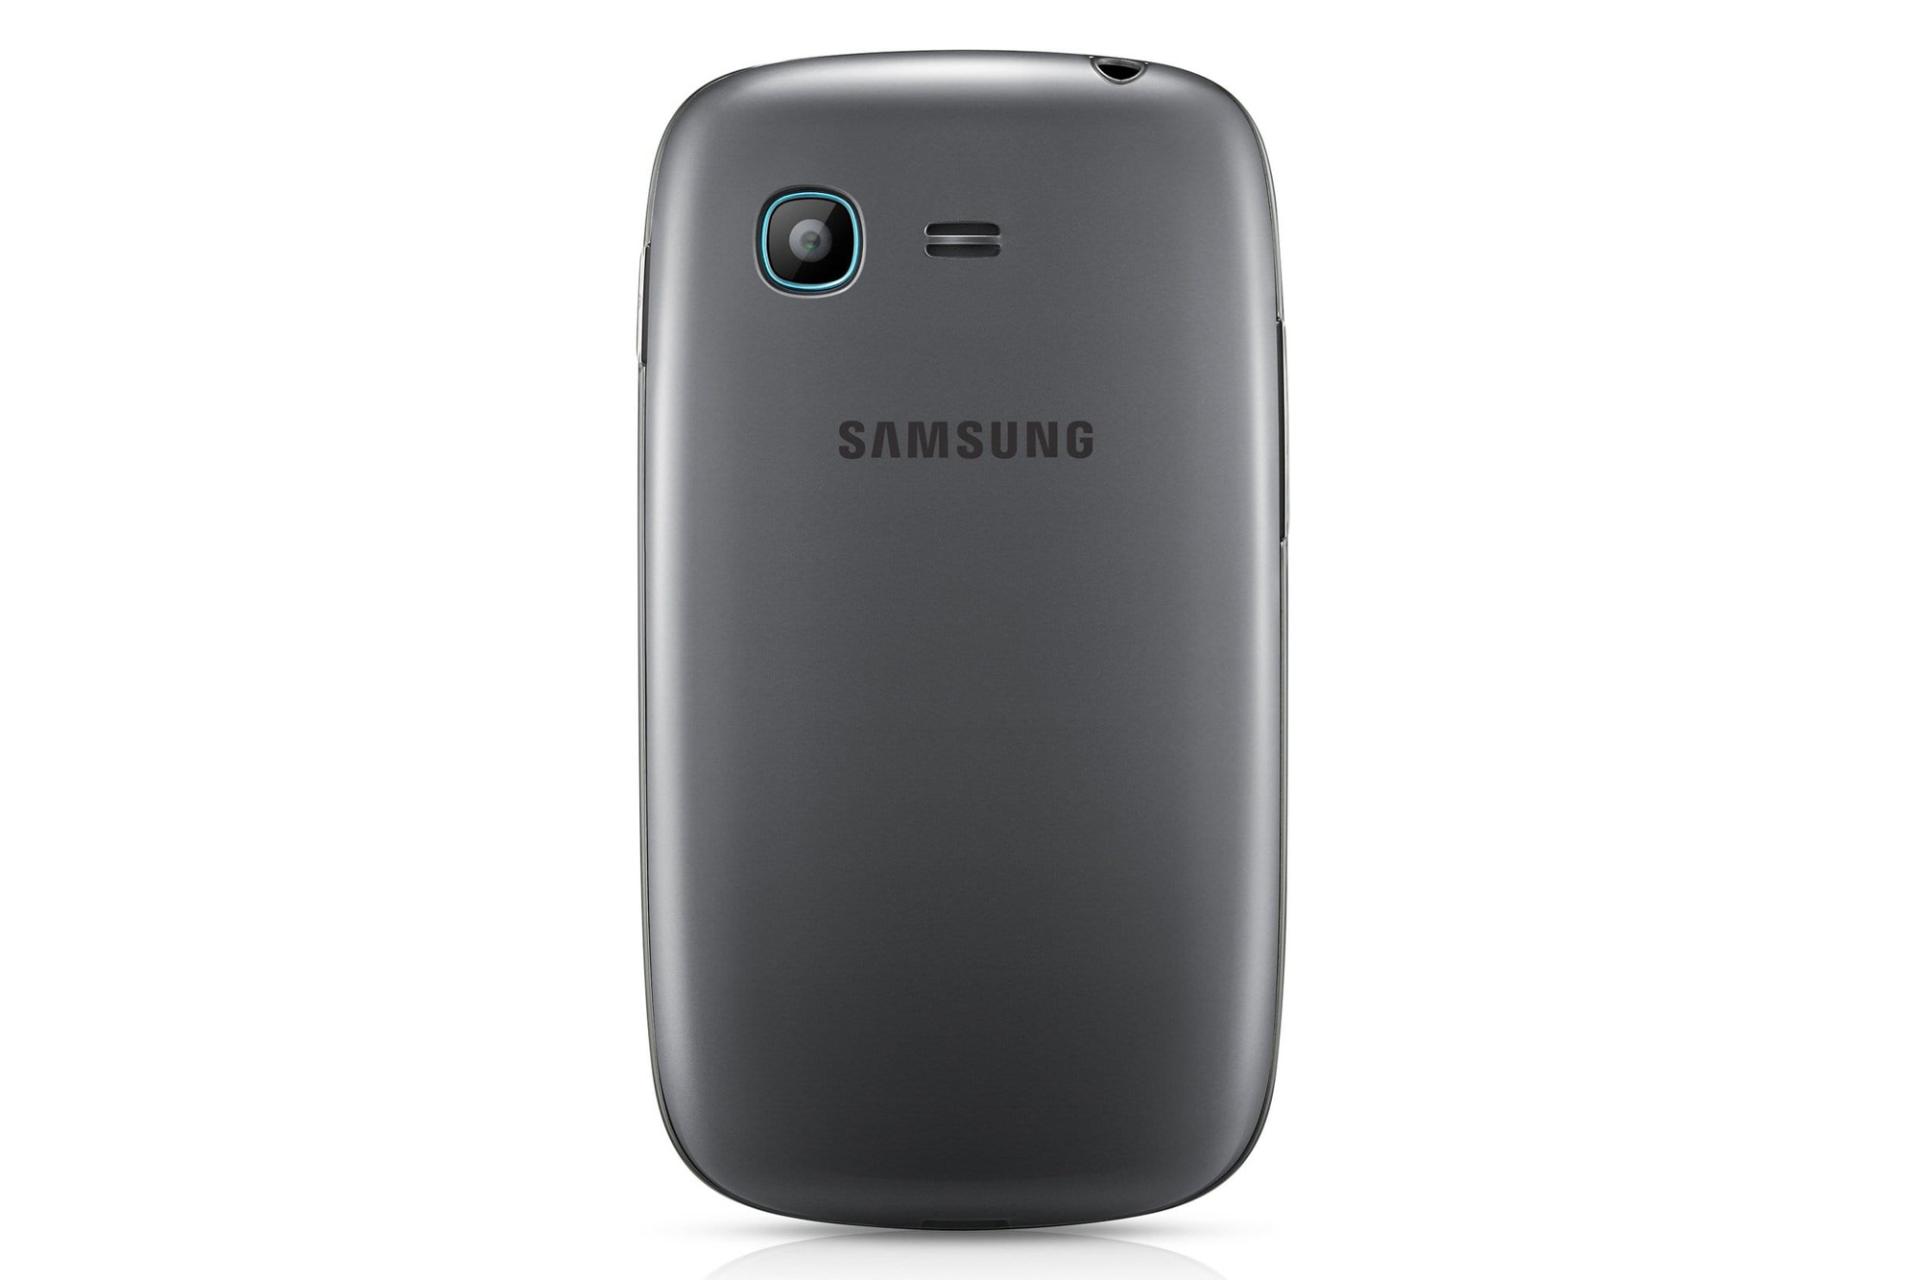 دوربین گلکسی پاکت نئو S5310 سامسونگ Samsung Galaxy Pocket Neo S5310